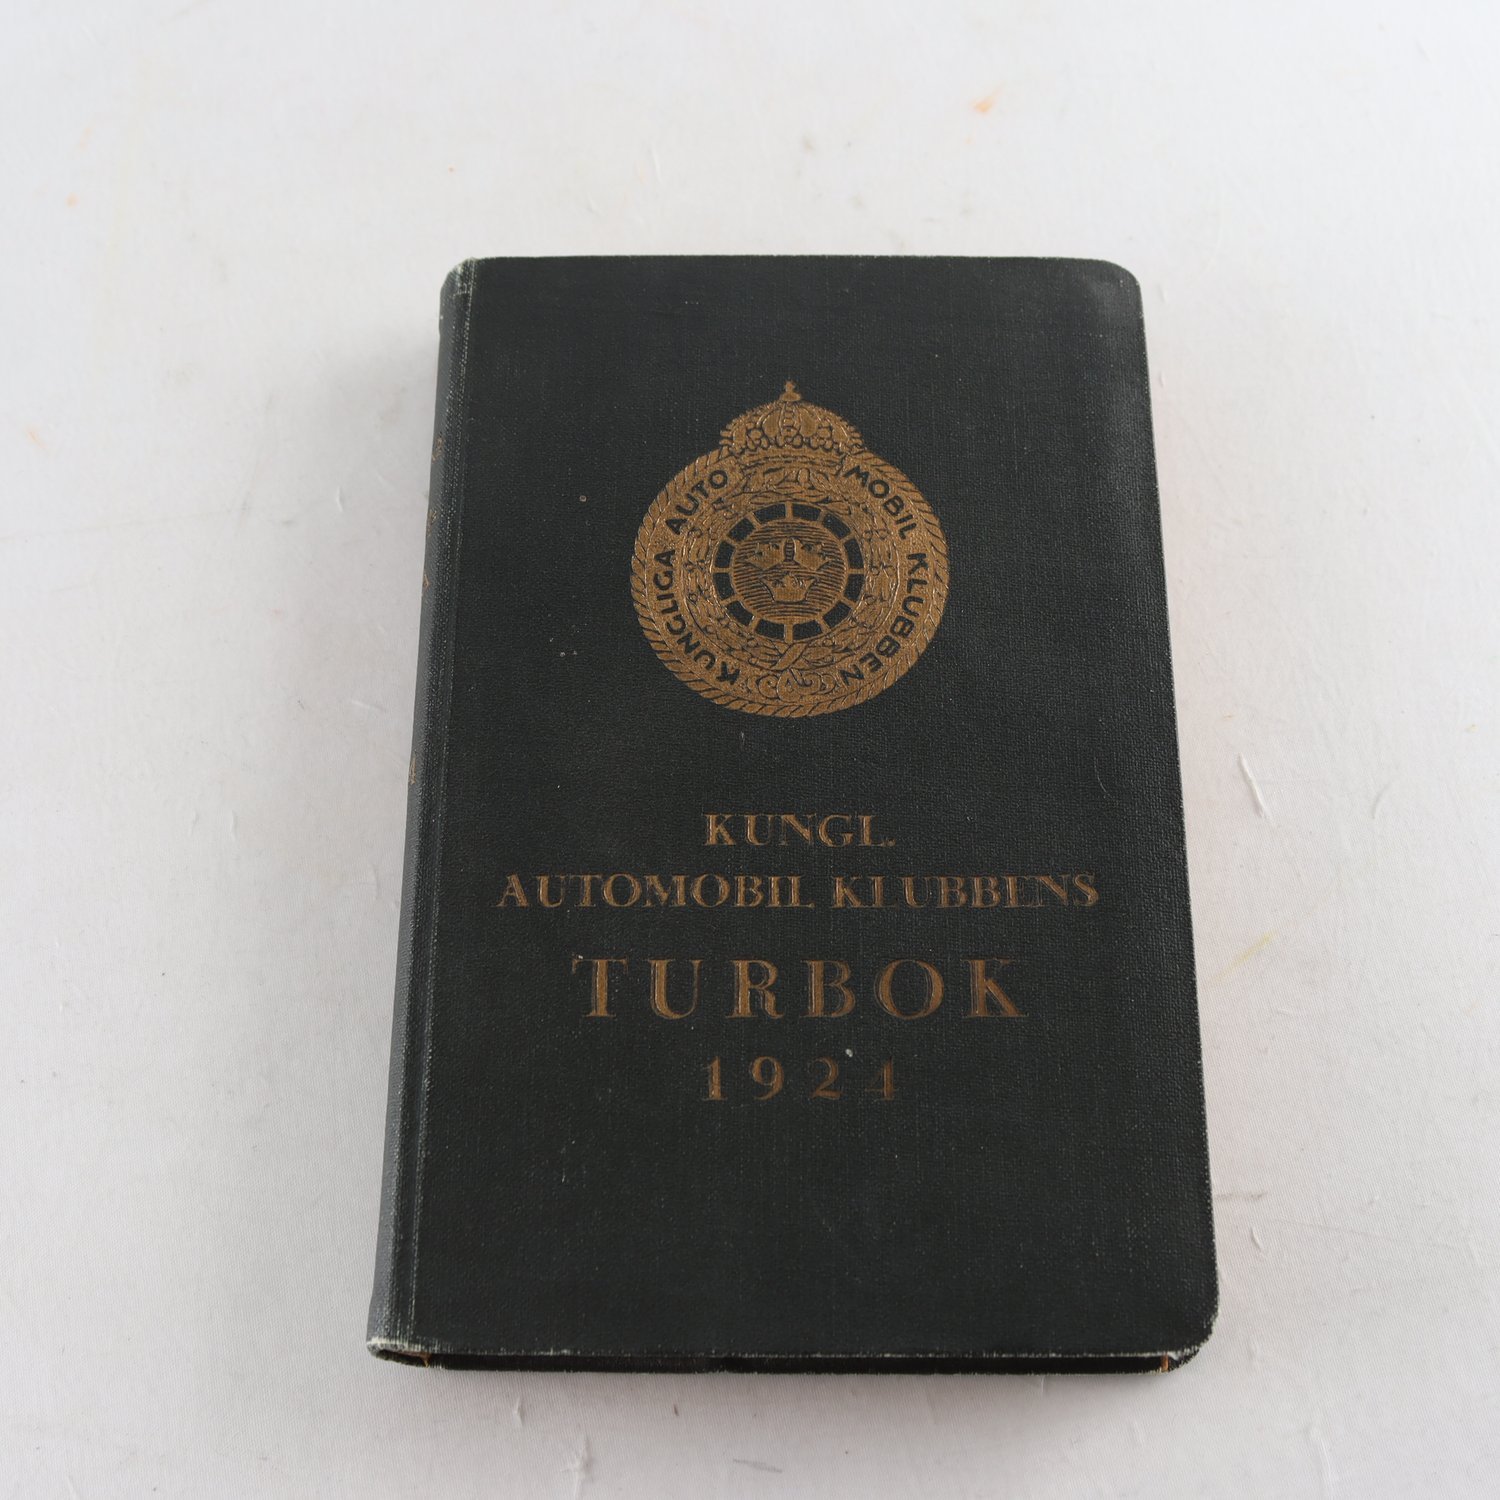 Kungl. Automobilklubbens turbok 1924